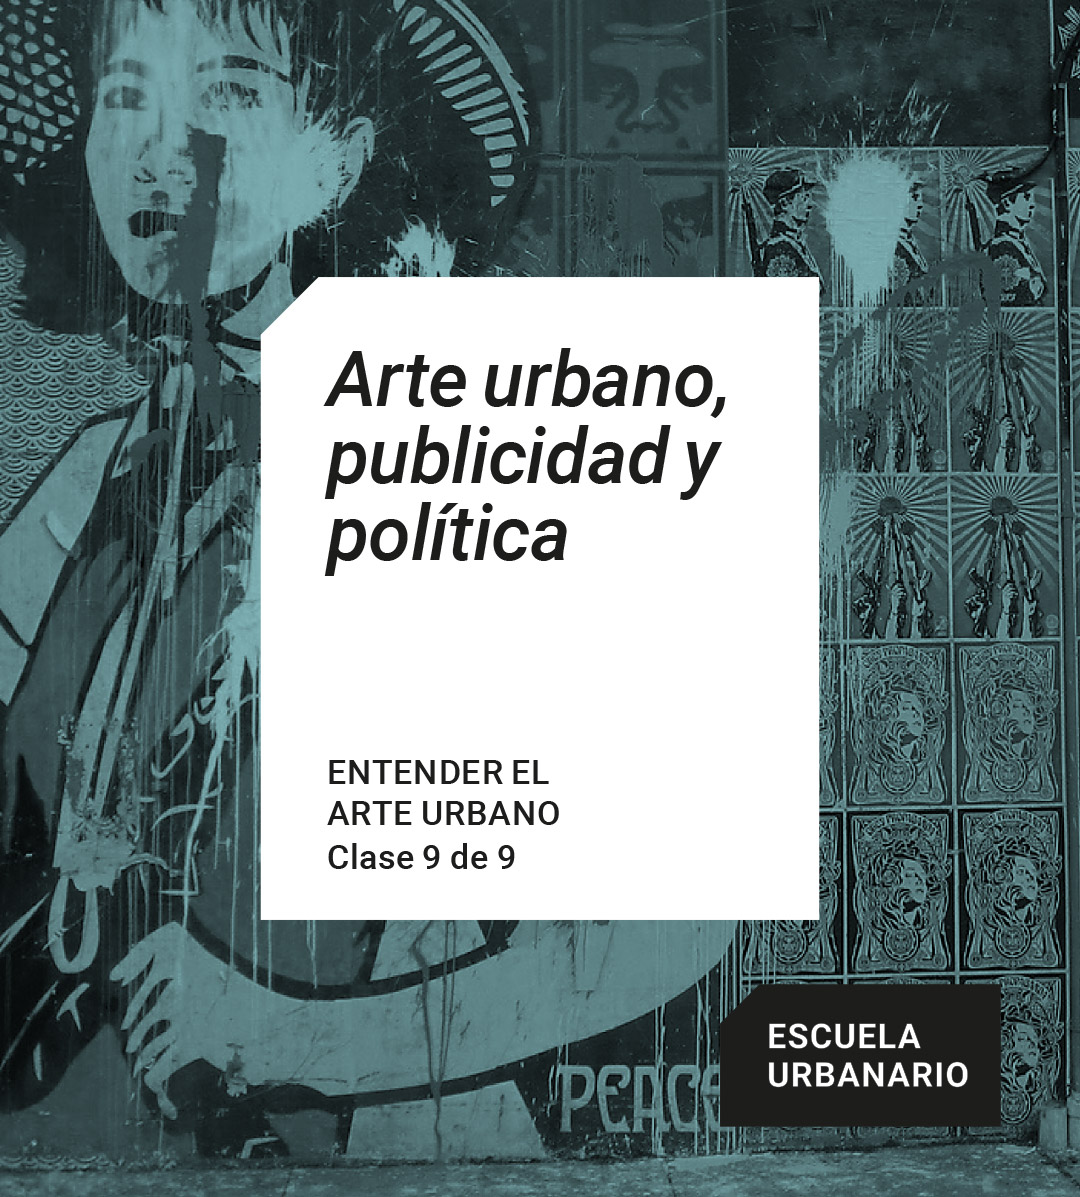 Entender el arte urbano 9 – Arte urbano publicidad y politica – Escuela Urbanario